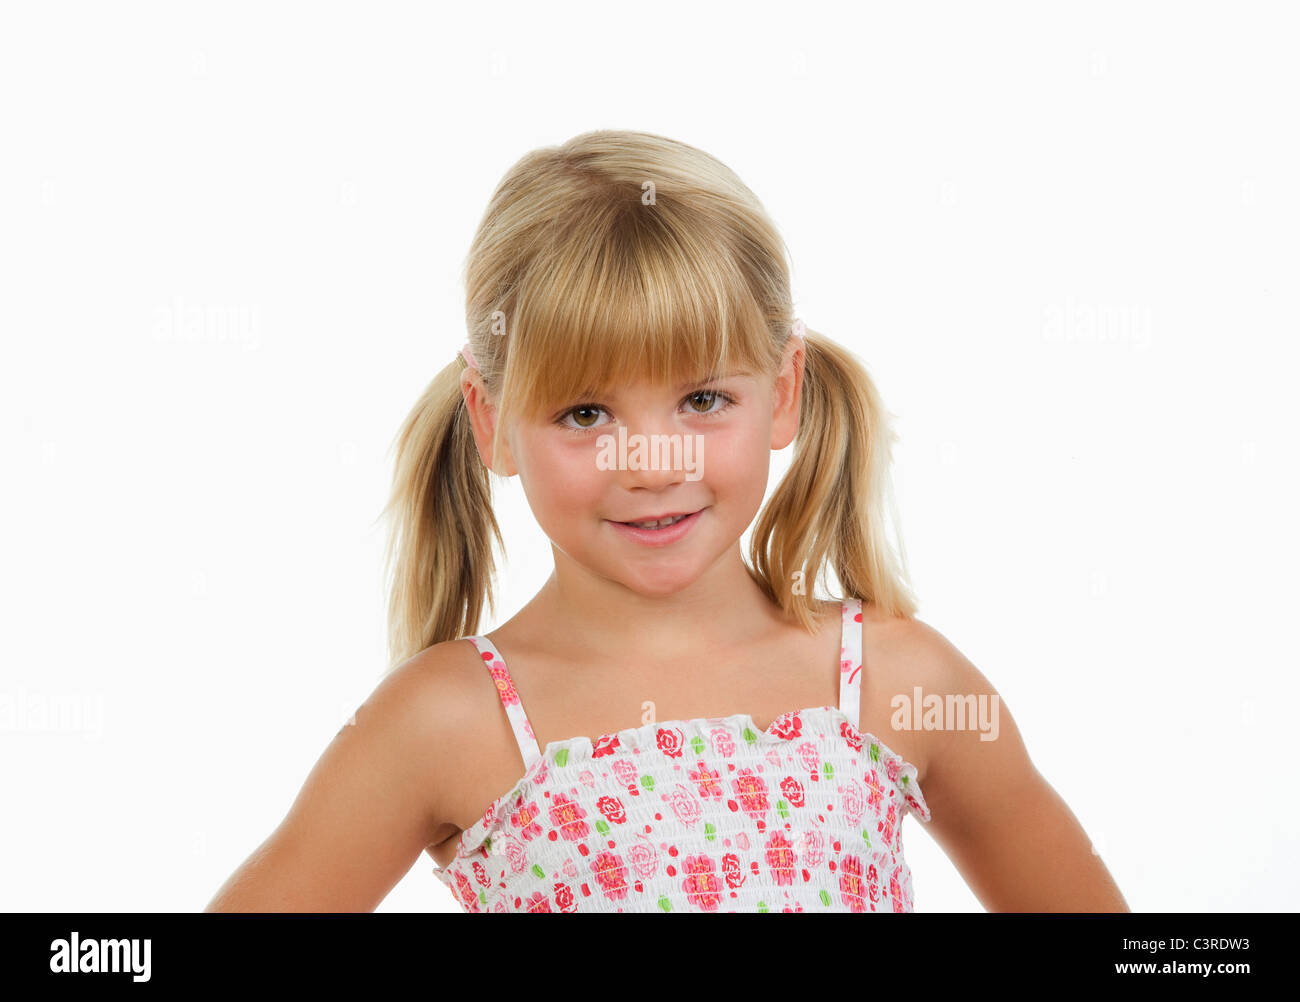 La ragazza (4-5) contro uno sfondo bianco, sorridente, ritratto Foto Stock